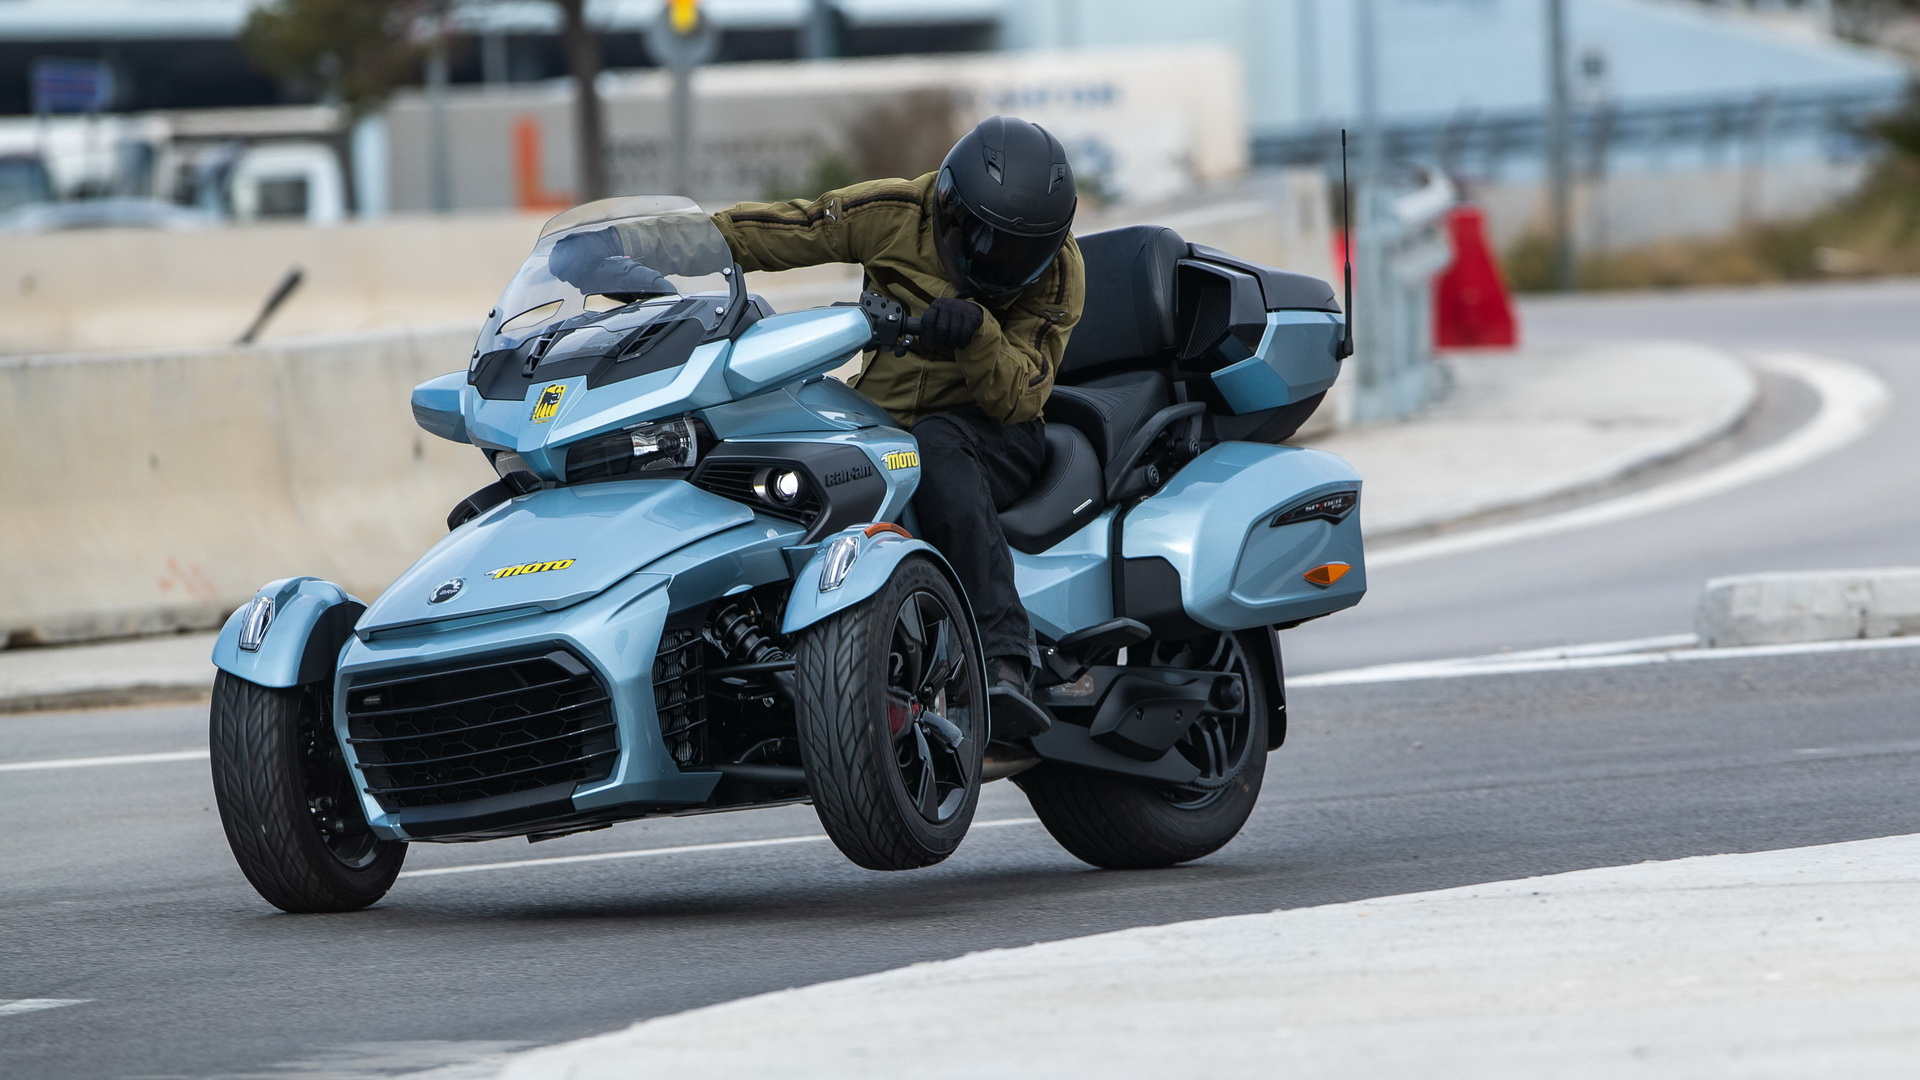 Test ride, Can-Am Spyder F3 Limited/Photo credit Moto Magazine/Γιώργος Νιαουνάκης